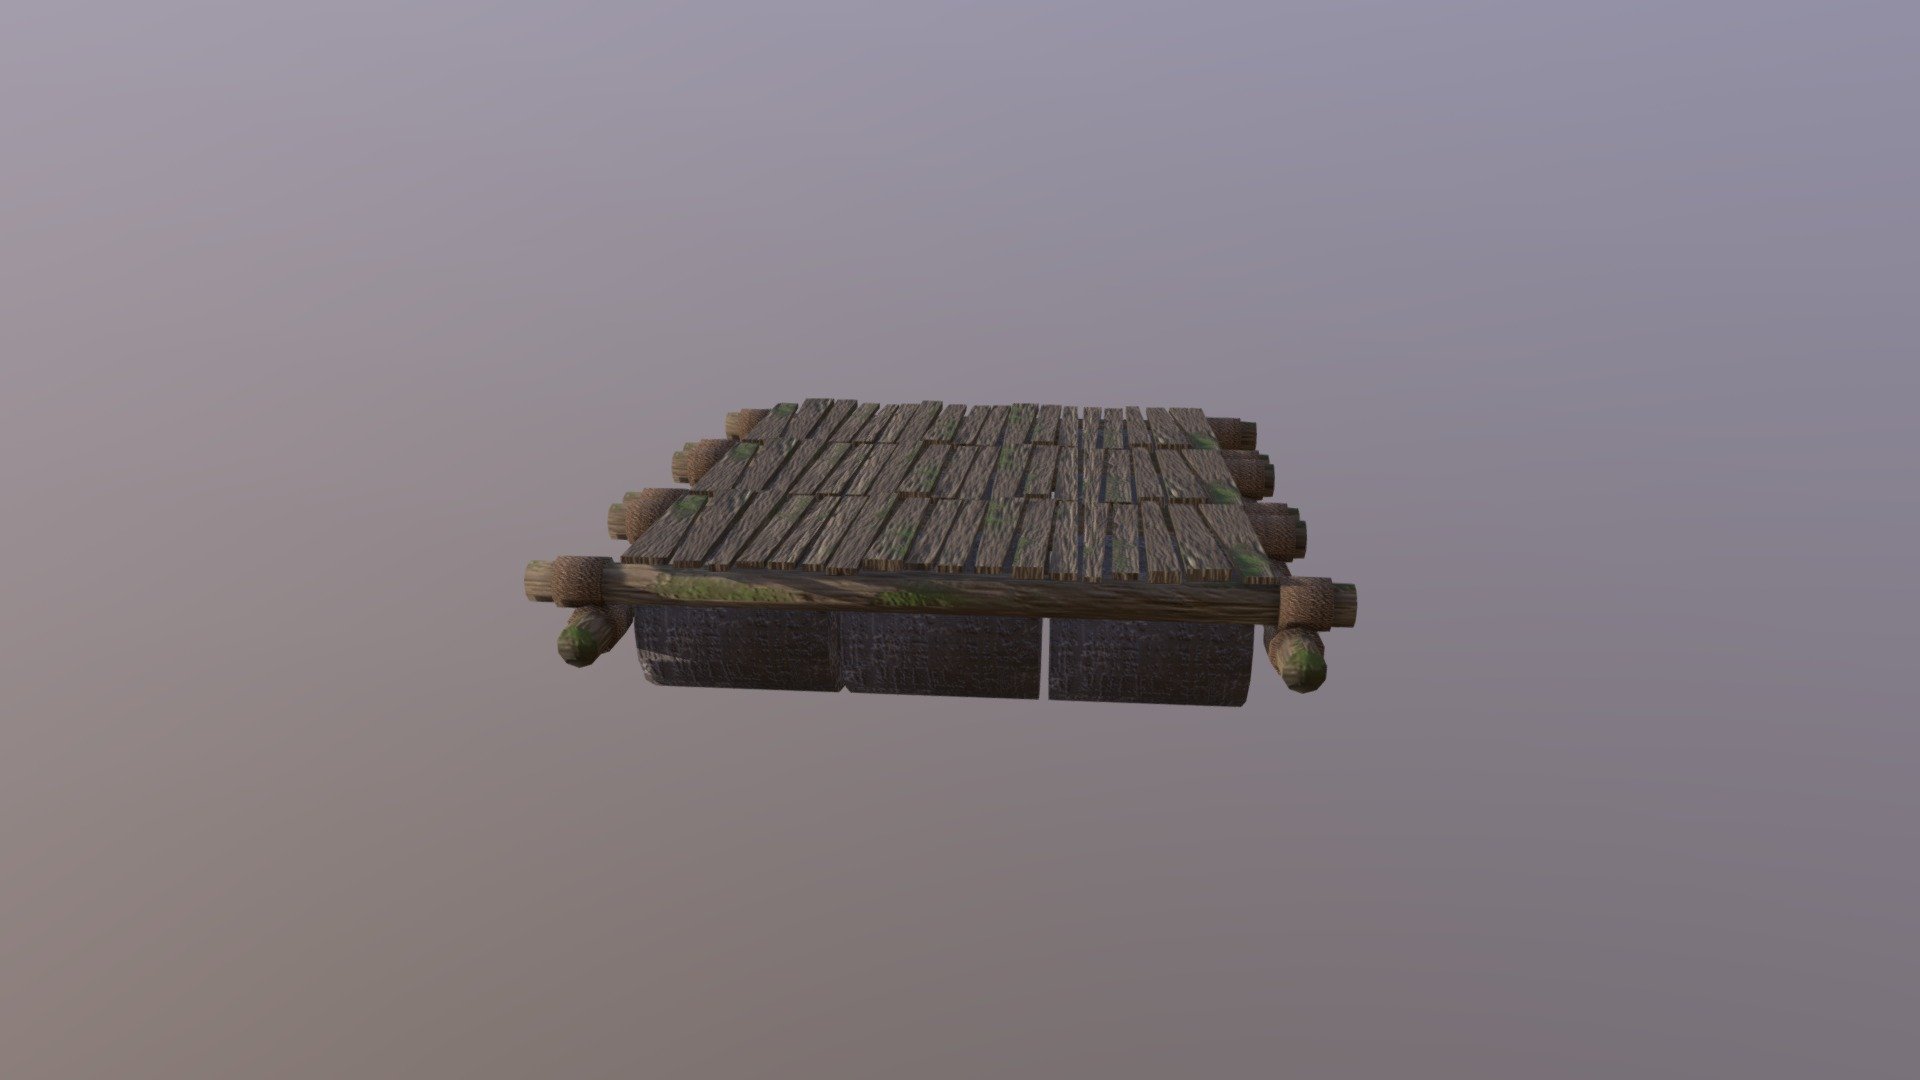 Junk Dock - 3D model by lurkhound (@bullycat) 3d model